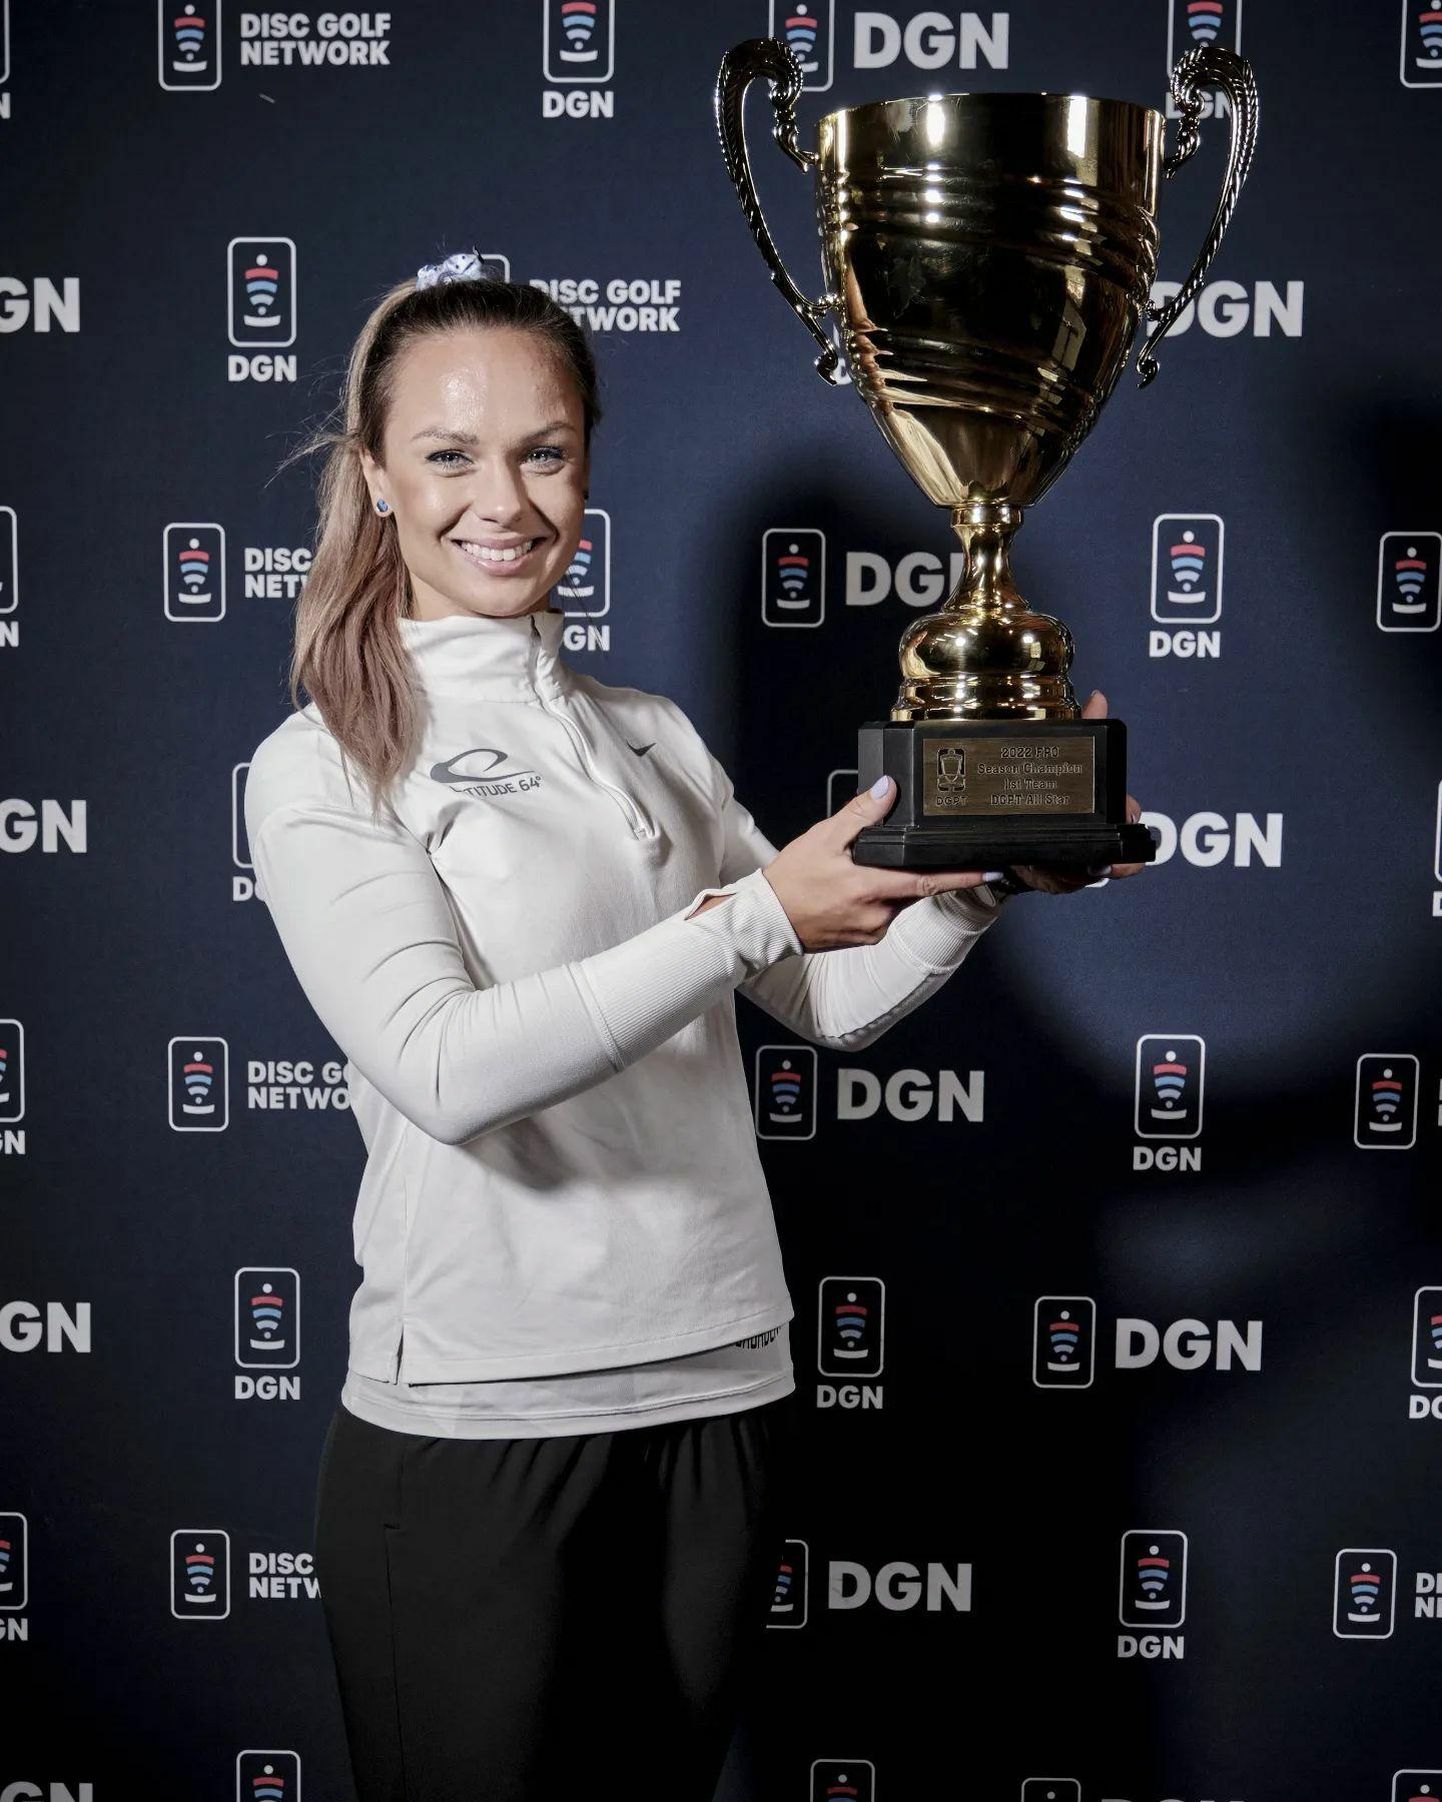 Kristin Tattar teenis Pro Touri üldvõidu eest säärase uhke karika. Nüüd on tal tükk tegemist, et trofee Eestisse transportida, sest sedasorti auhindu noppis ta Ameerikas hulganisti.